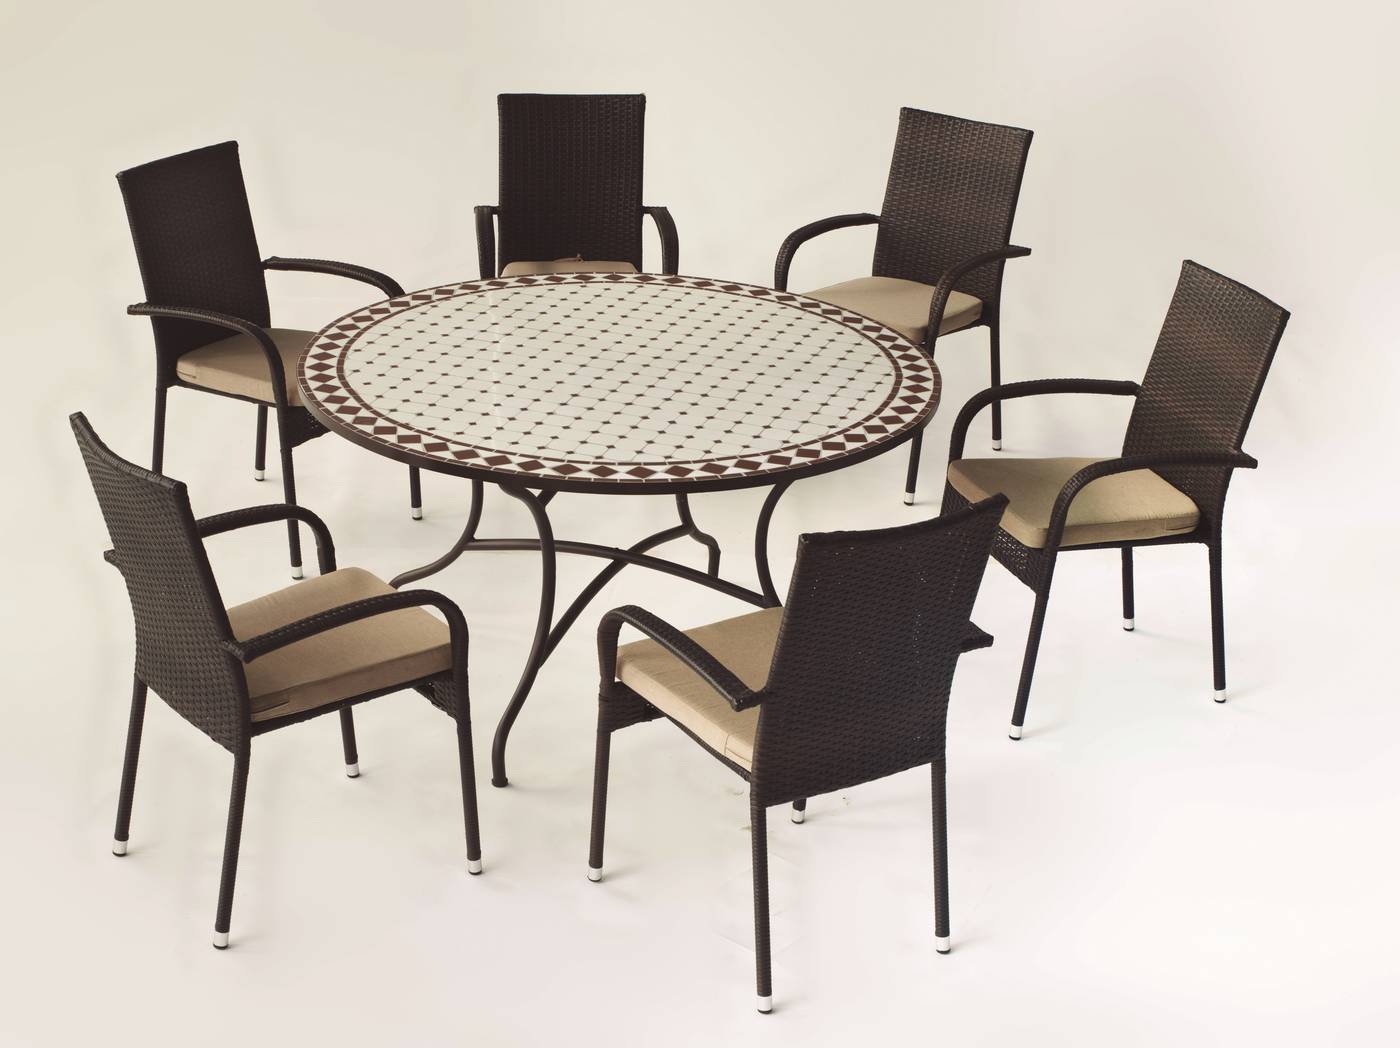 Conjunto Mosaico Zaira140-Bergamo - Conjunto de forja color marrón: mesa con tablero mosaico de 140 cm + 6 sillones de ratán sintético con cojines.